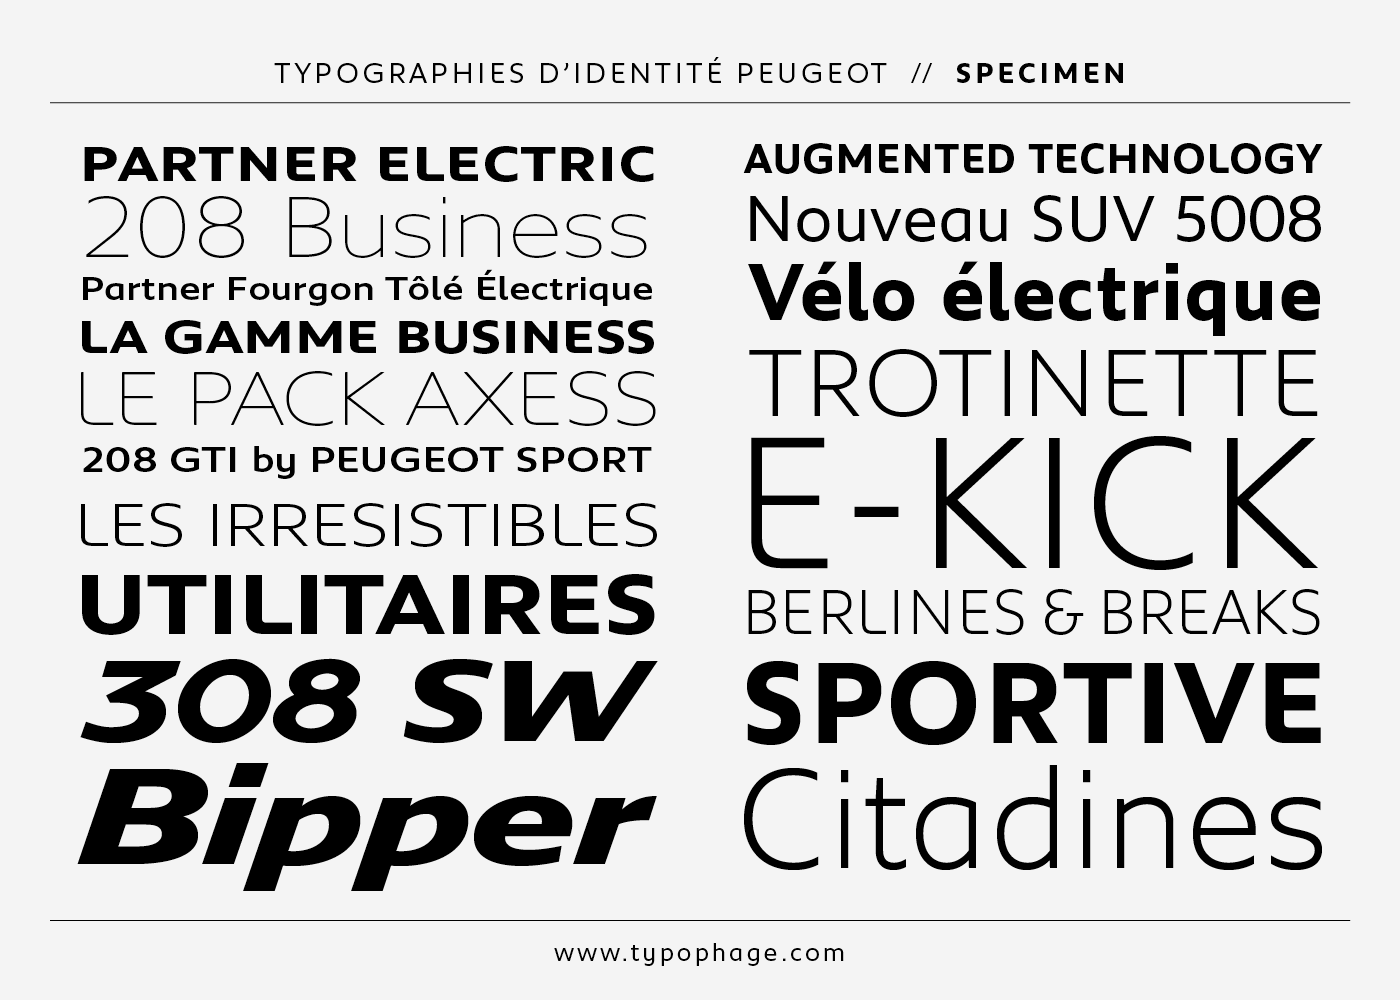 Typographies d'identité Peugeot. Spécimen de caractères typographiques.